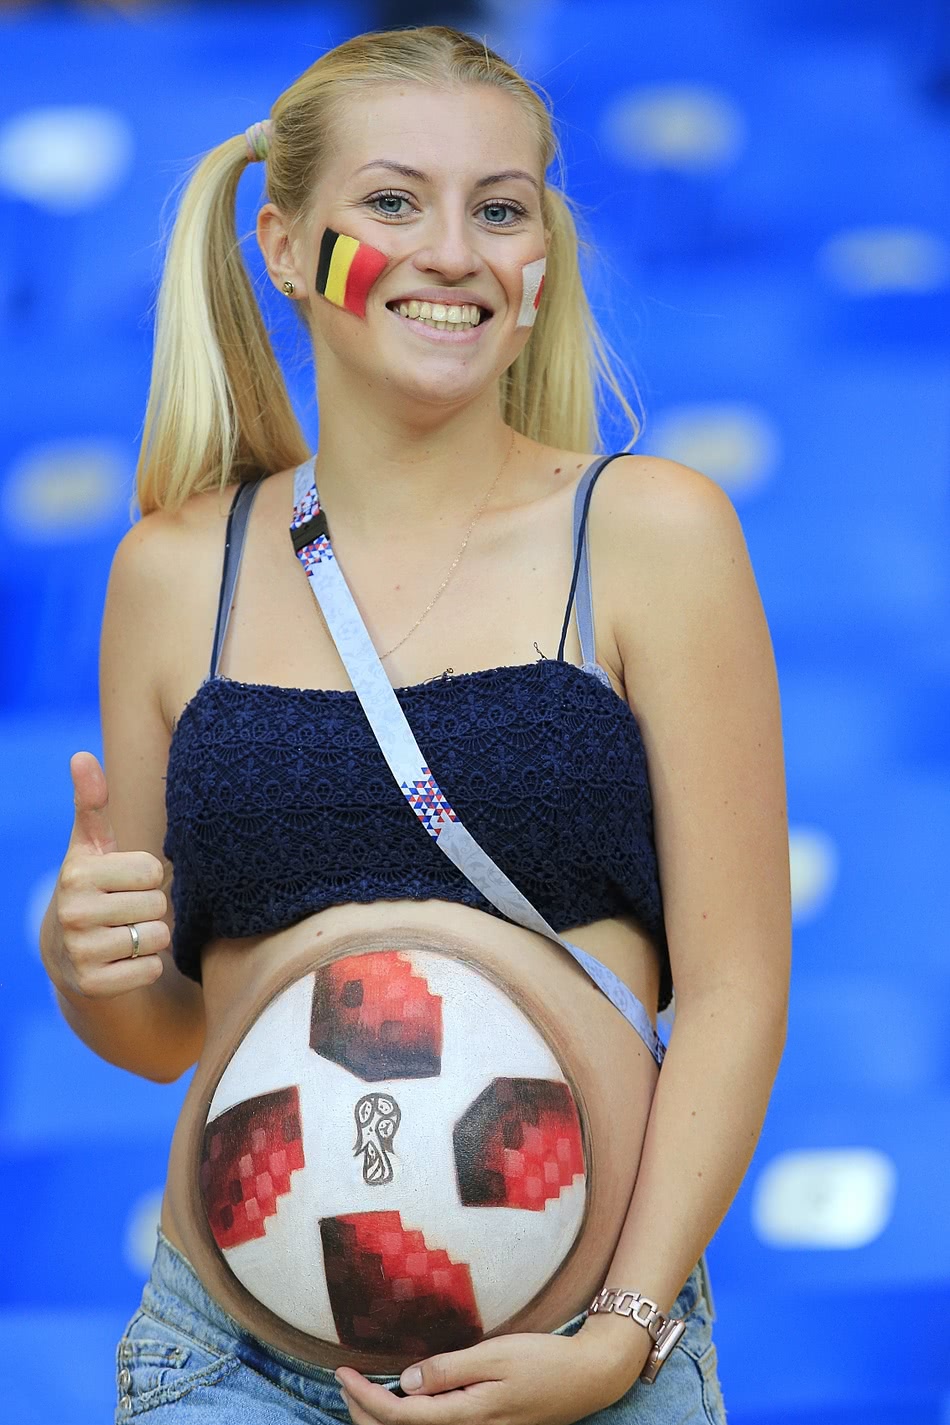 世界杯最调皮女球迷!美女孕肚画成足球,扎双马尾笑容甜美